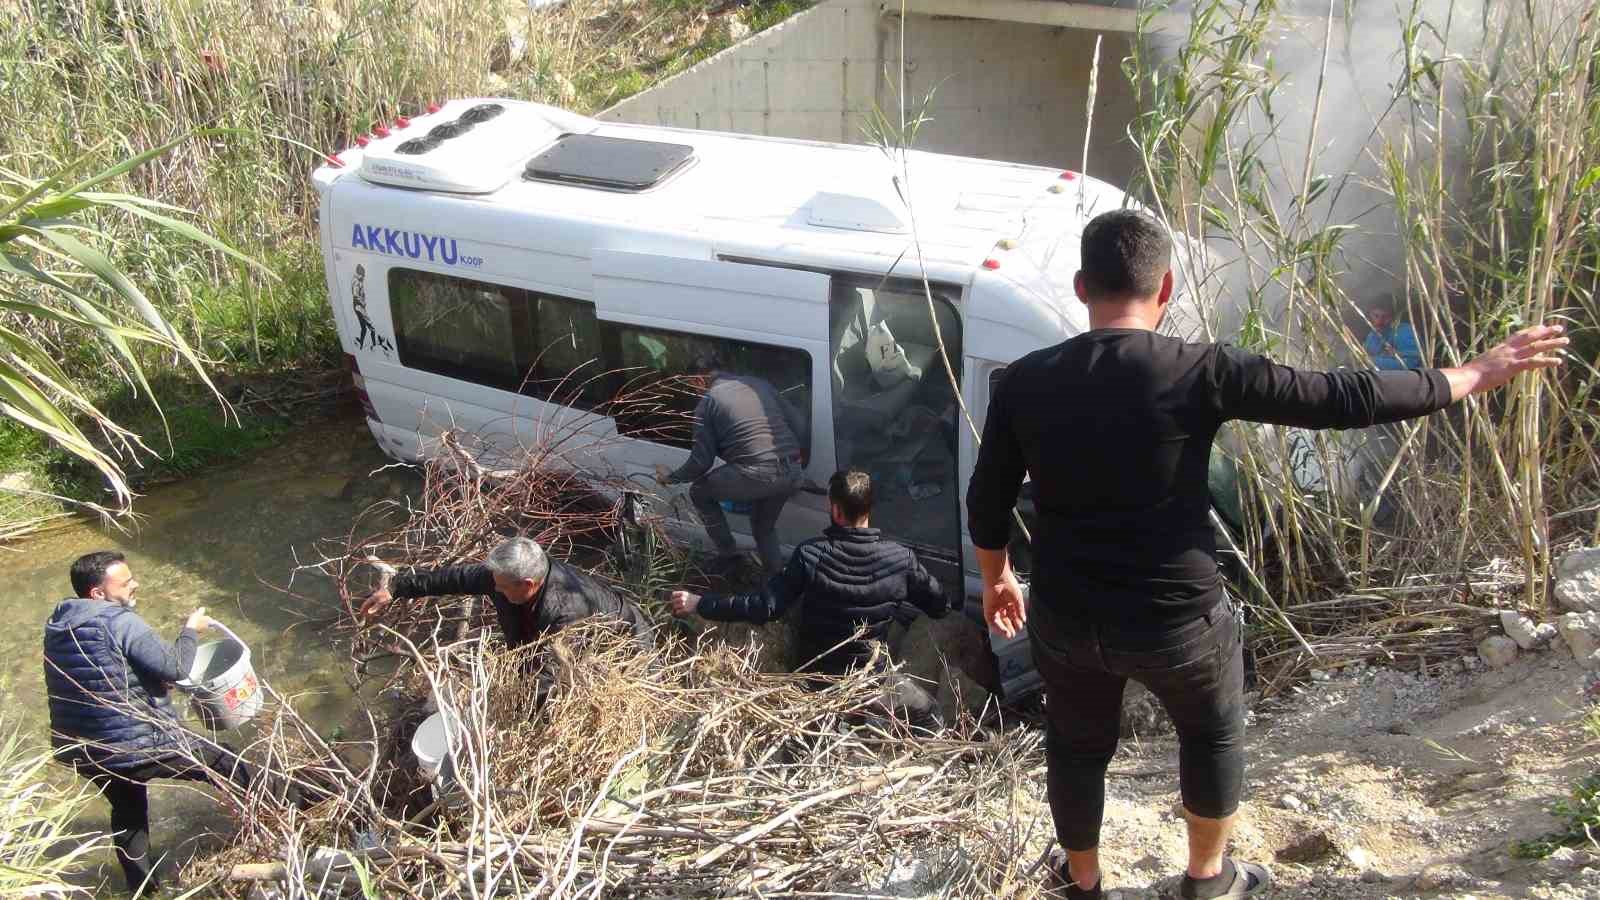 Mersin’de yolcu minibüsü ile otomobil çarpıştı: 1 ölü, 13 yaralı
